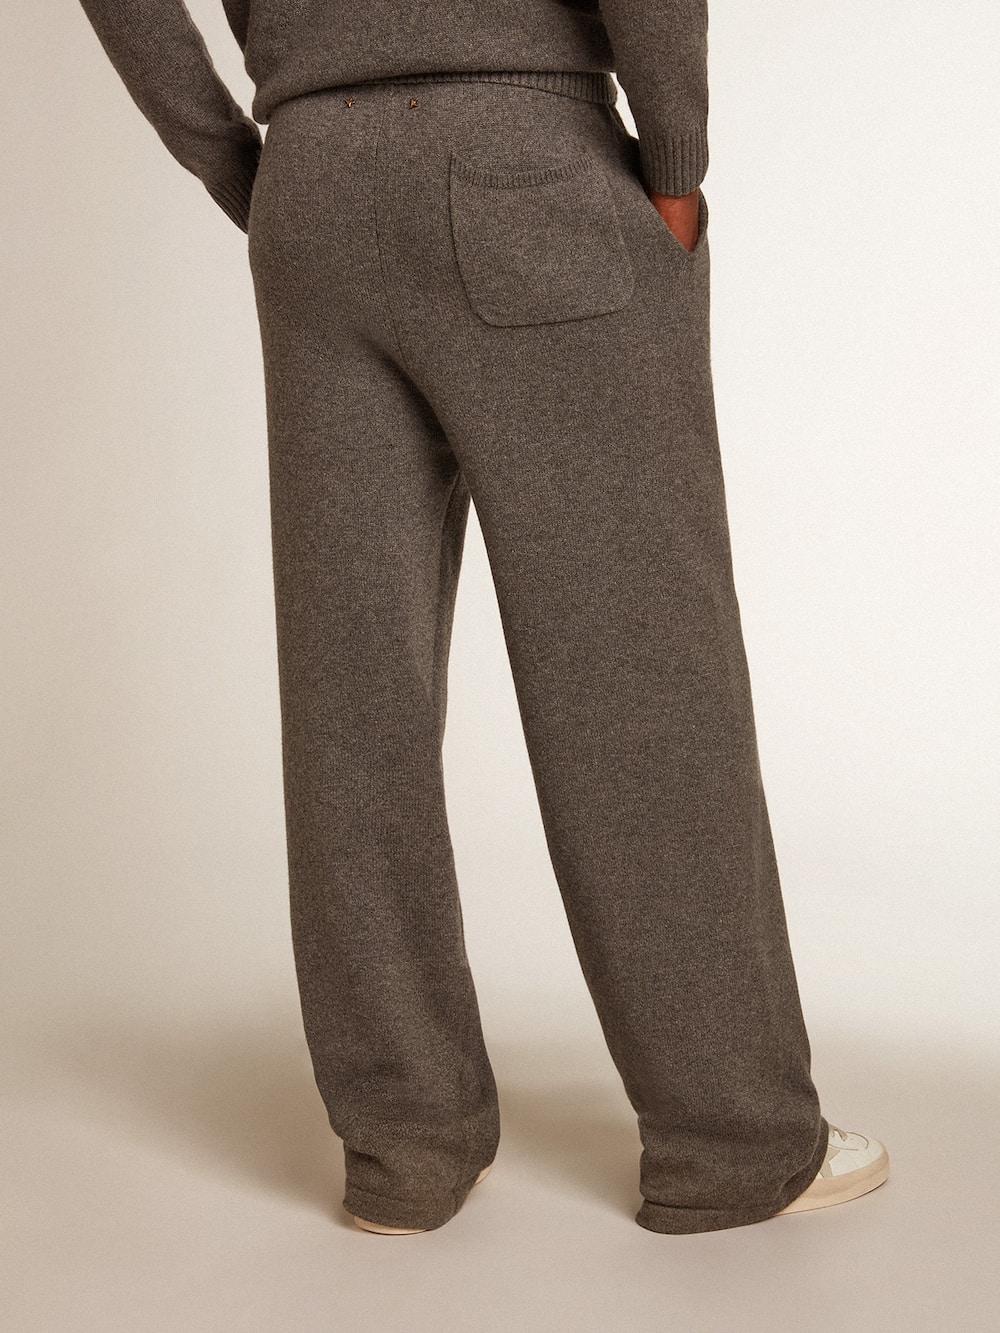 Golden Goose - Pantalón jogger de hombre en mezcla de cachemira color gris jaspeado in 